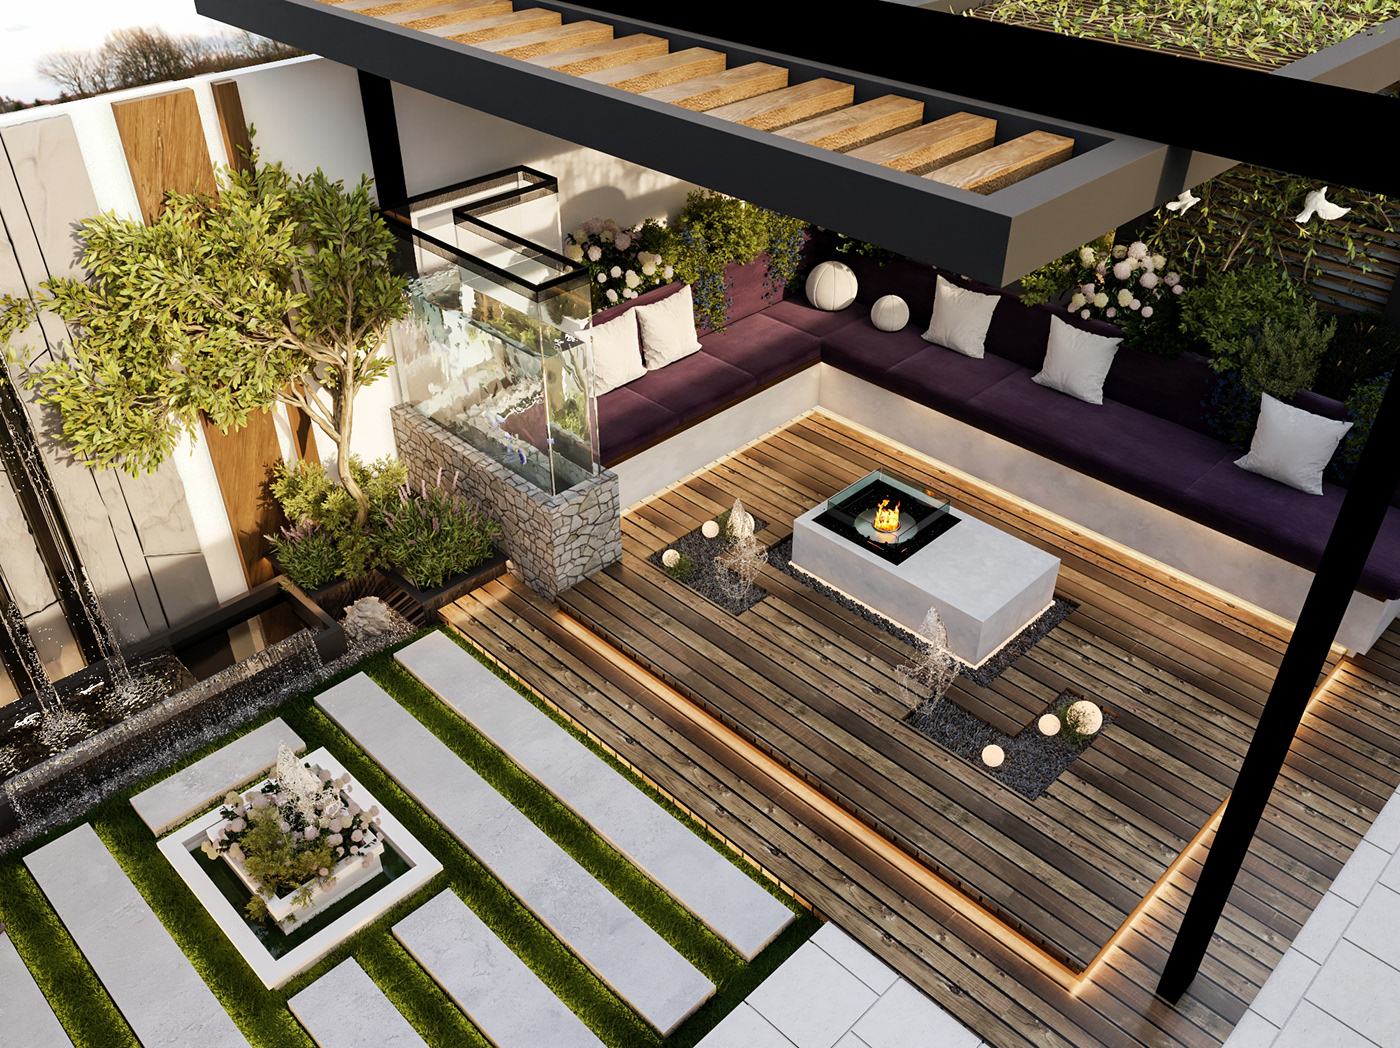 Plant Landscape exterior Render 3ds max vray architecture design